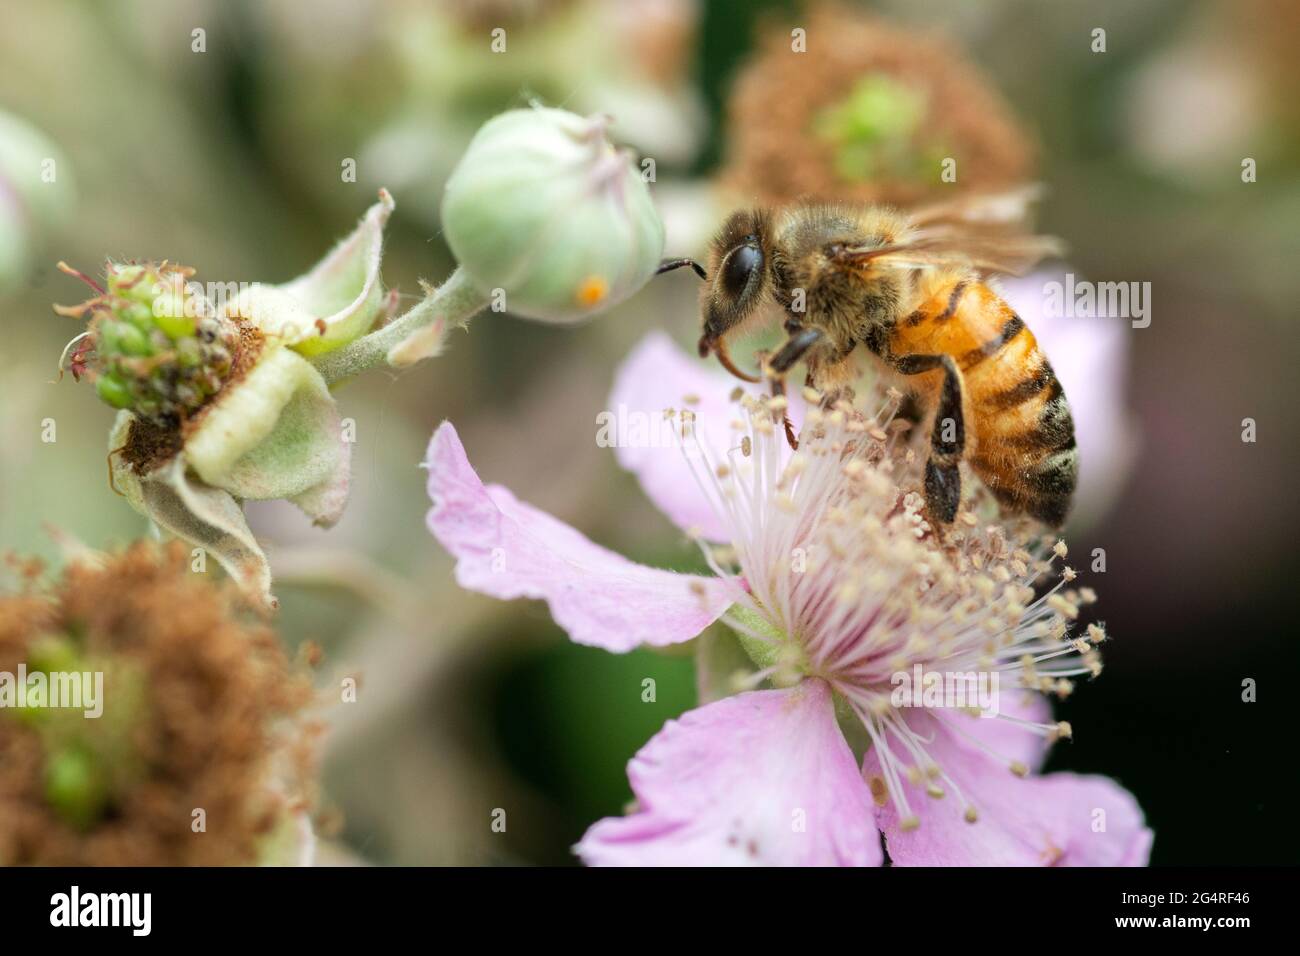 Italie, Lombardie, abeille collectant du pollen sur des fleurs roses Rubus Ulmifolius Banque D'Images